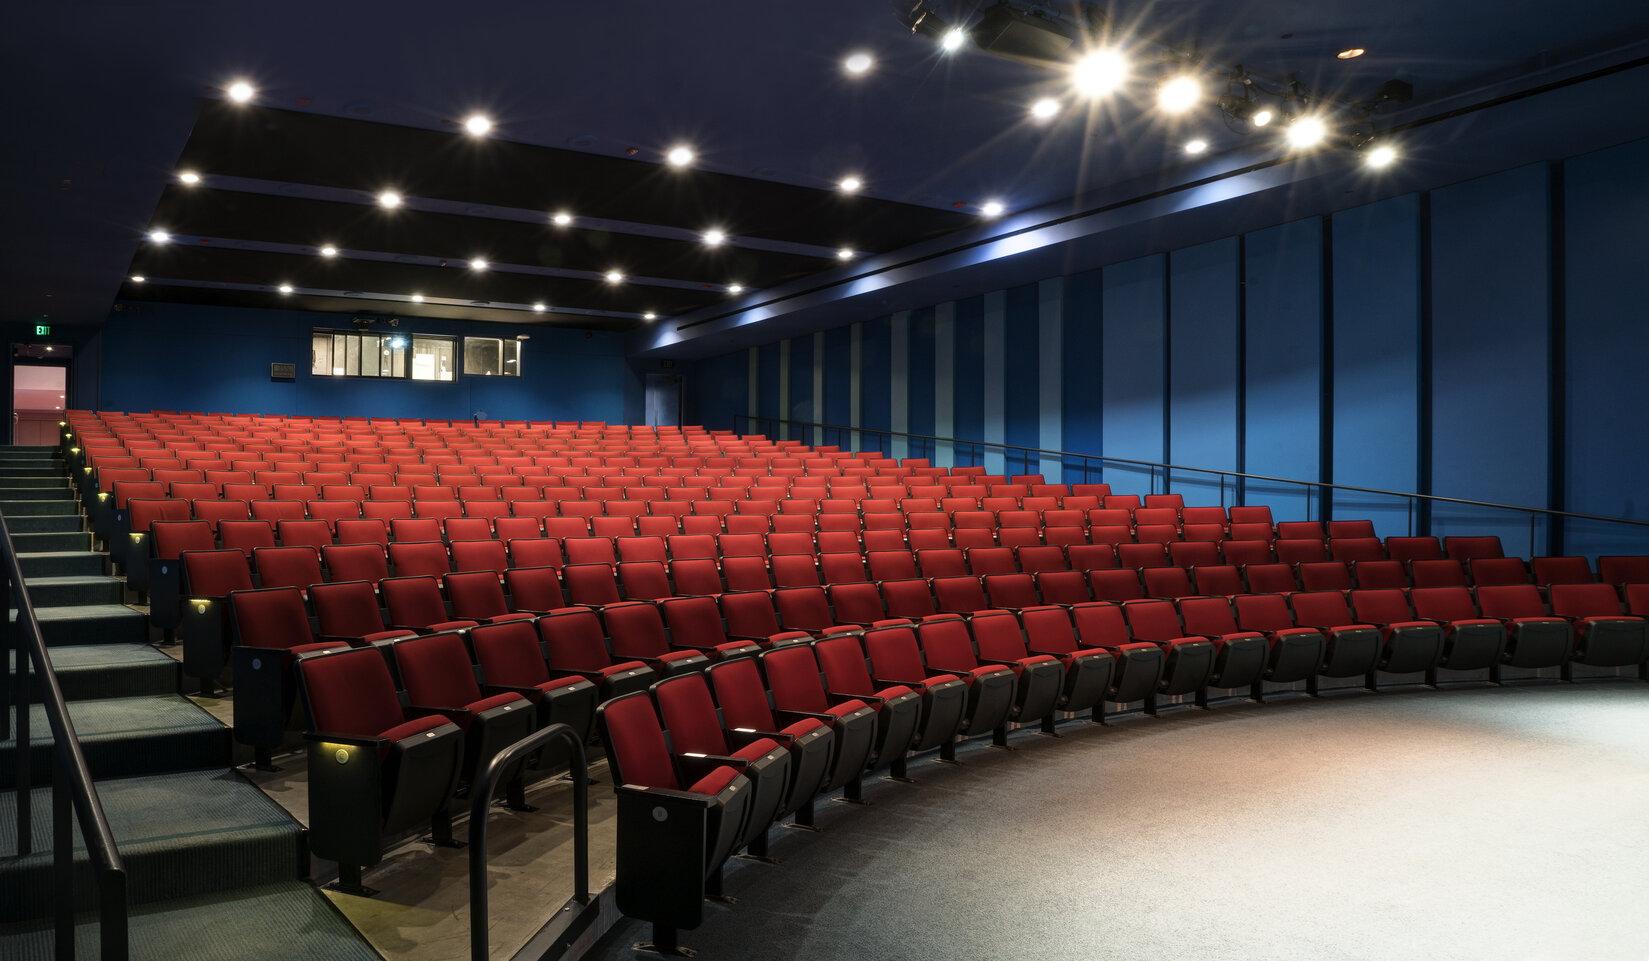 Growing Auditorium Seating Market